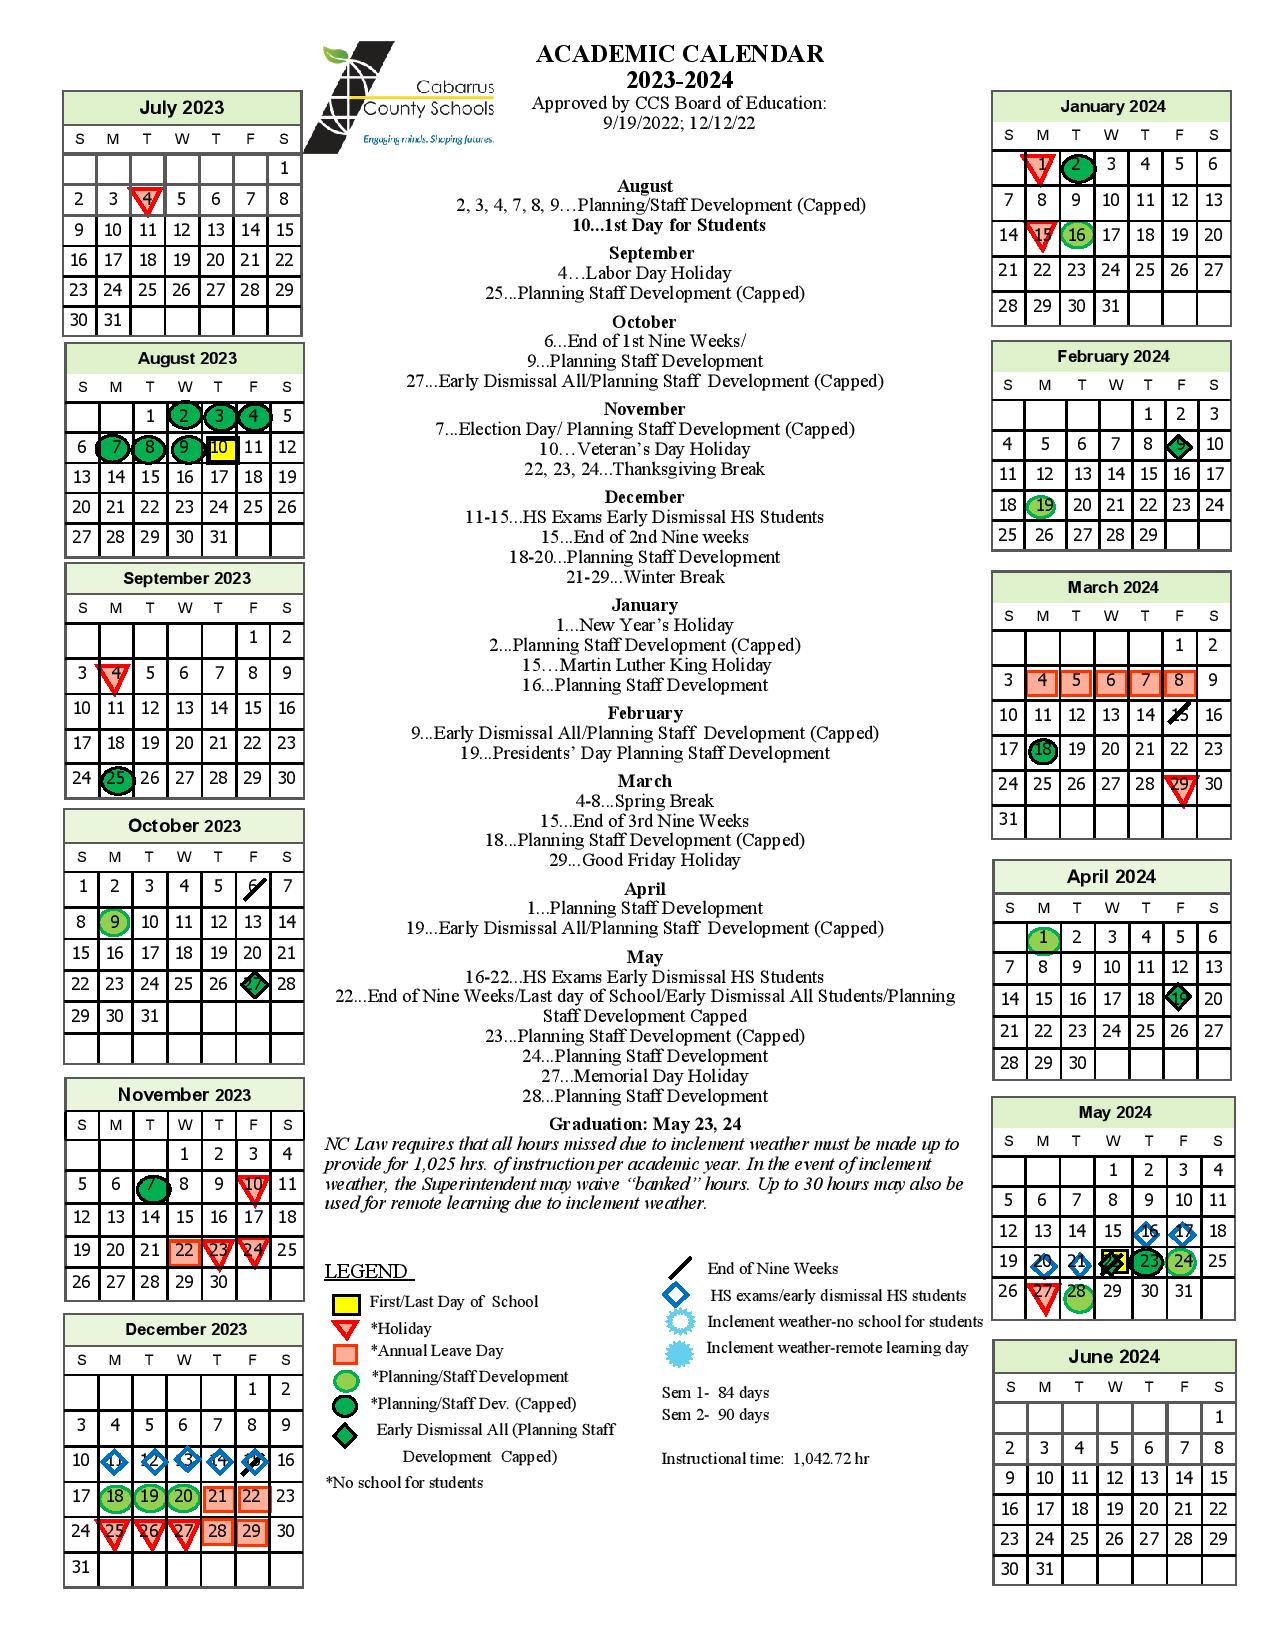 cabarrus-county-calendar-2024-alvina-nataline